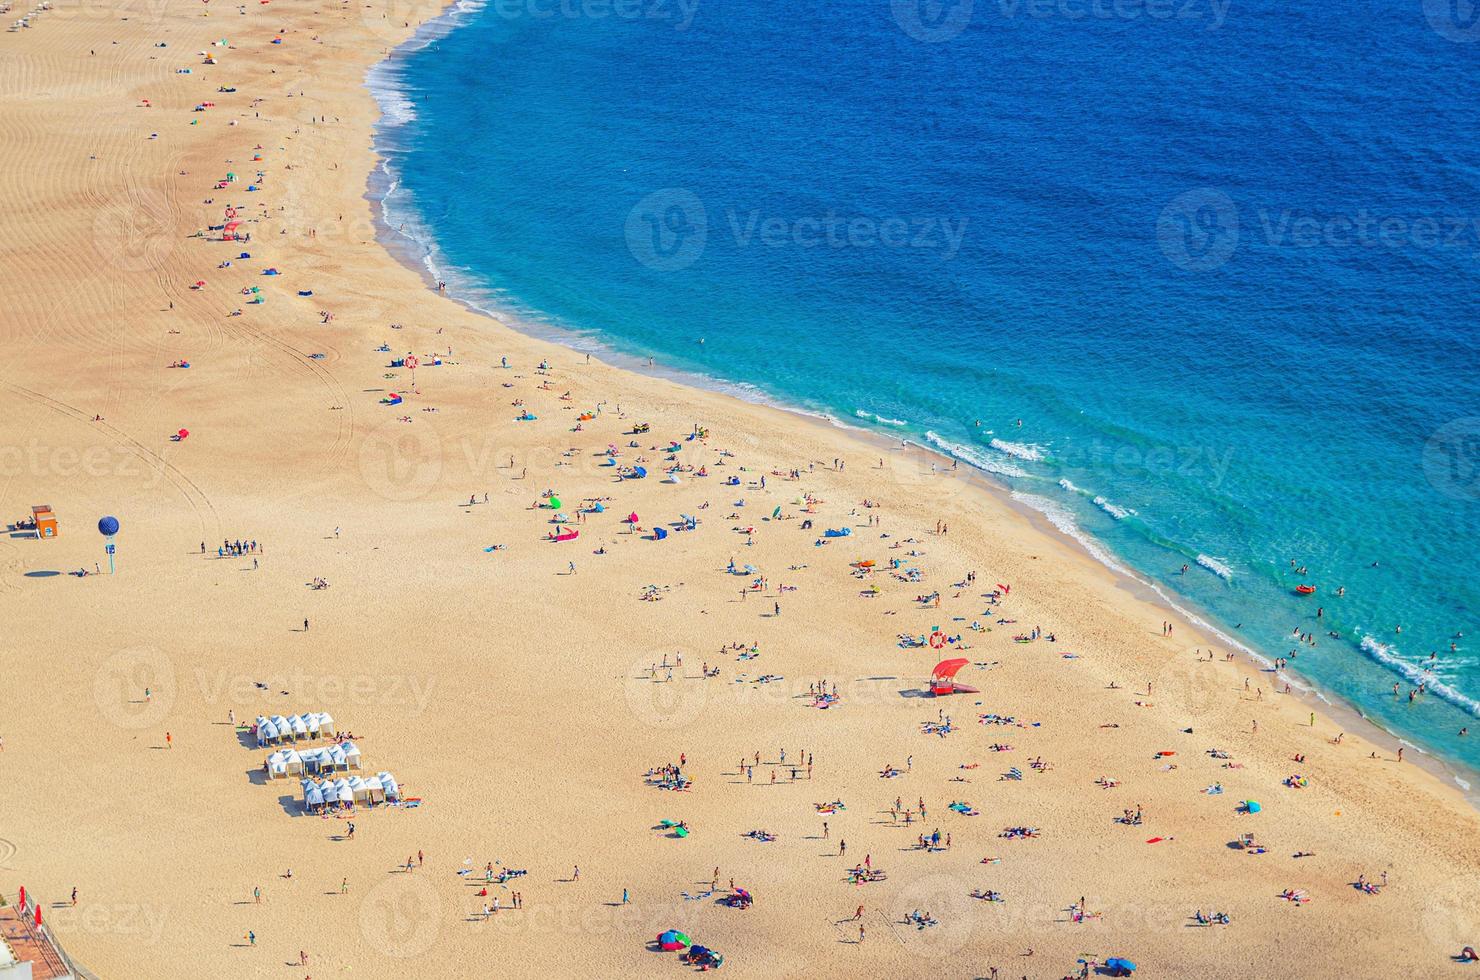 Top luchtfoto van zandstrand met mensen toeristen zonnebaden en Atlantische Oceaan azuurblauw turquoise water, praia da nazare foto